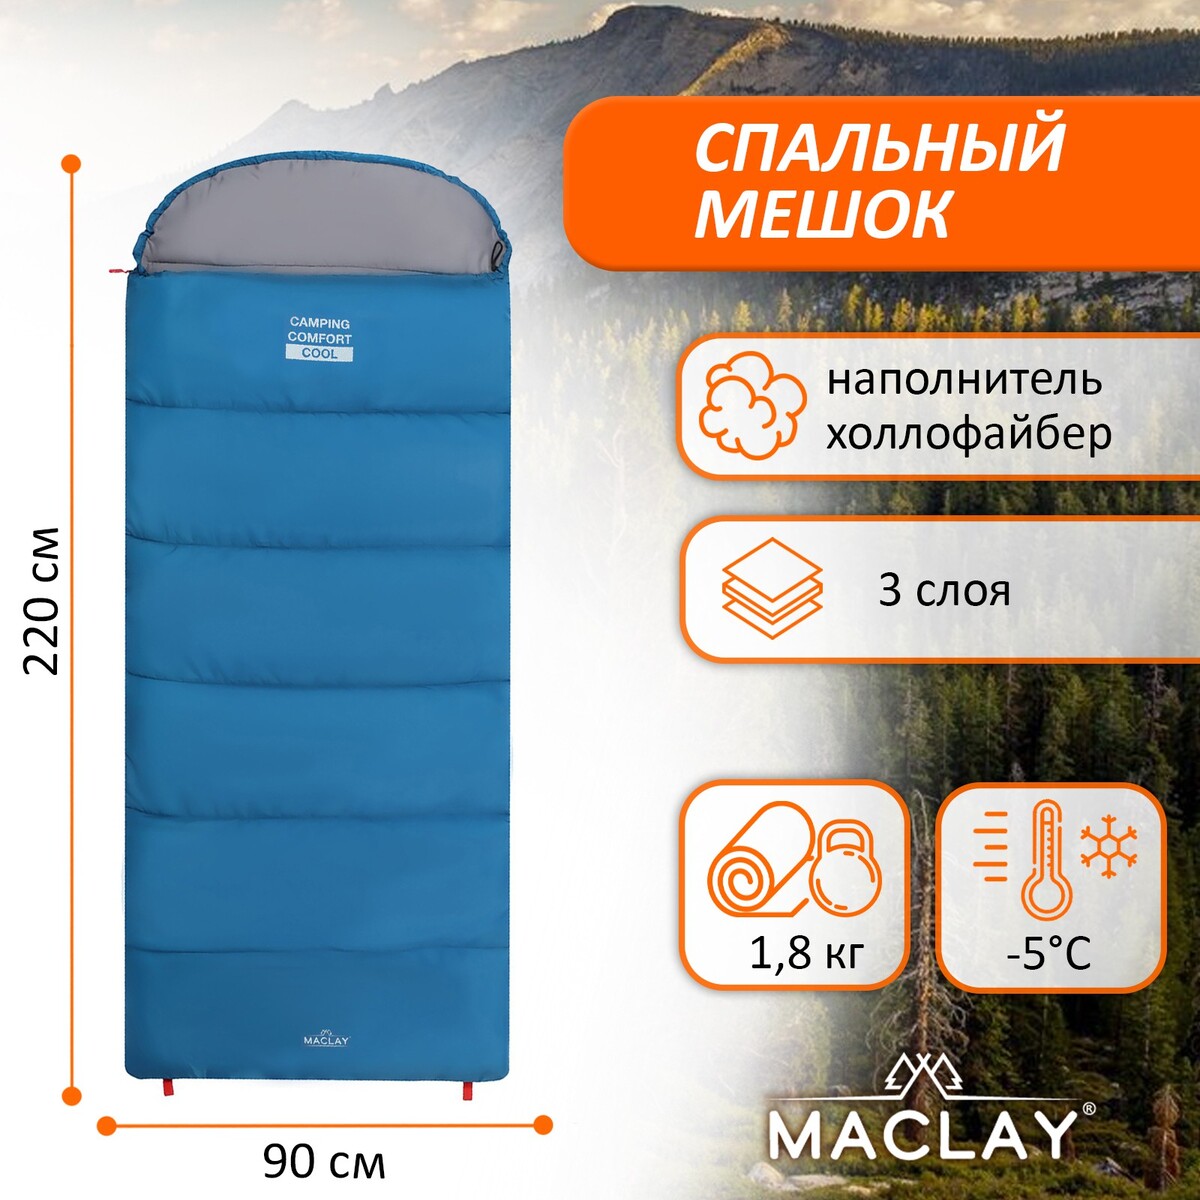 Спальный мешок maclay camping comfort cool, 3-слойный, правый, 220х90 см, -5/+10°с спальный мешок maclay 1 5 слоя 185х90 см 10 25°с эконом